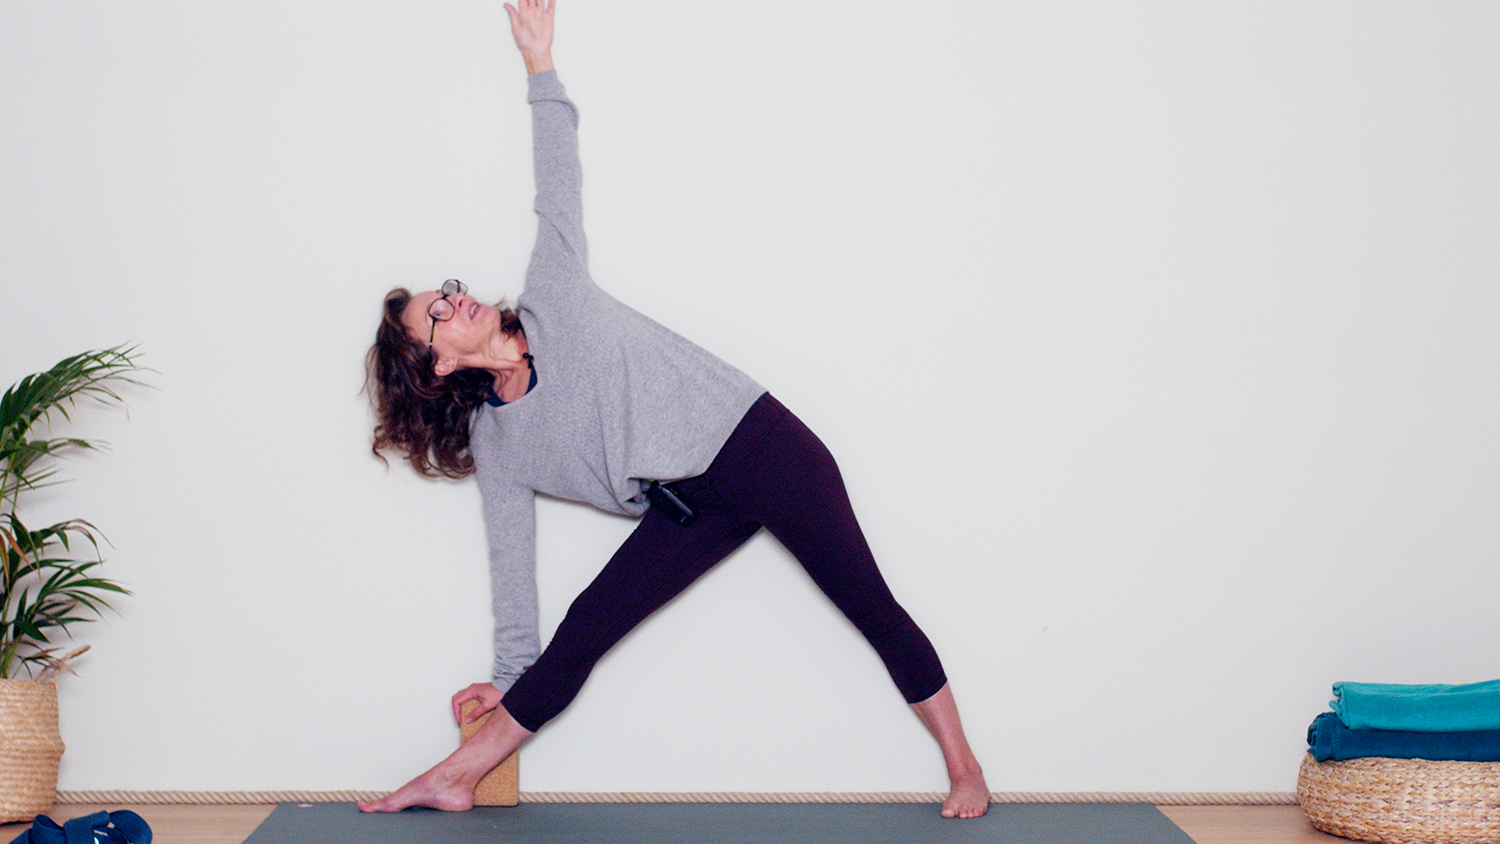 Le lien à la Terre | Cours de yoga en ligne avec Delphine Denis | Hatha Yoga dynamique